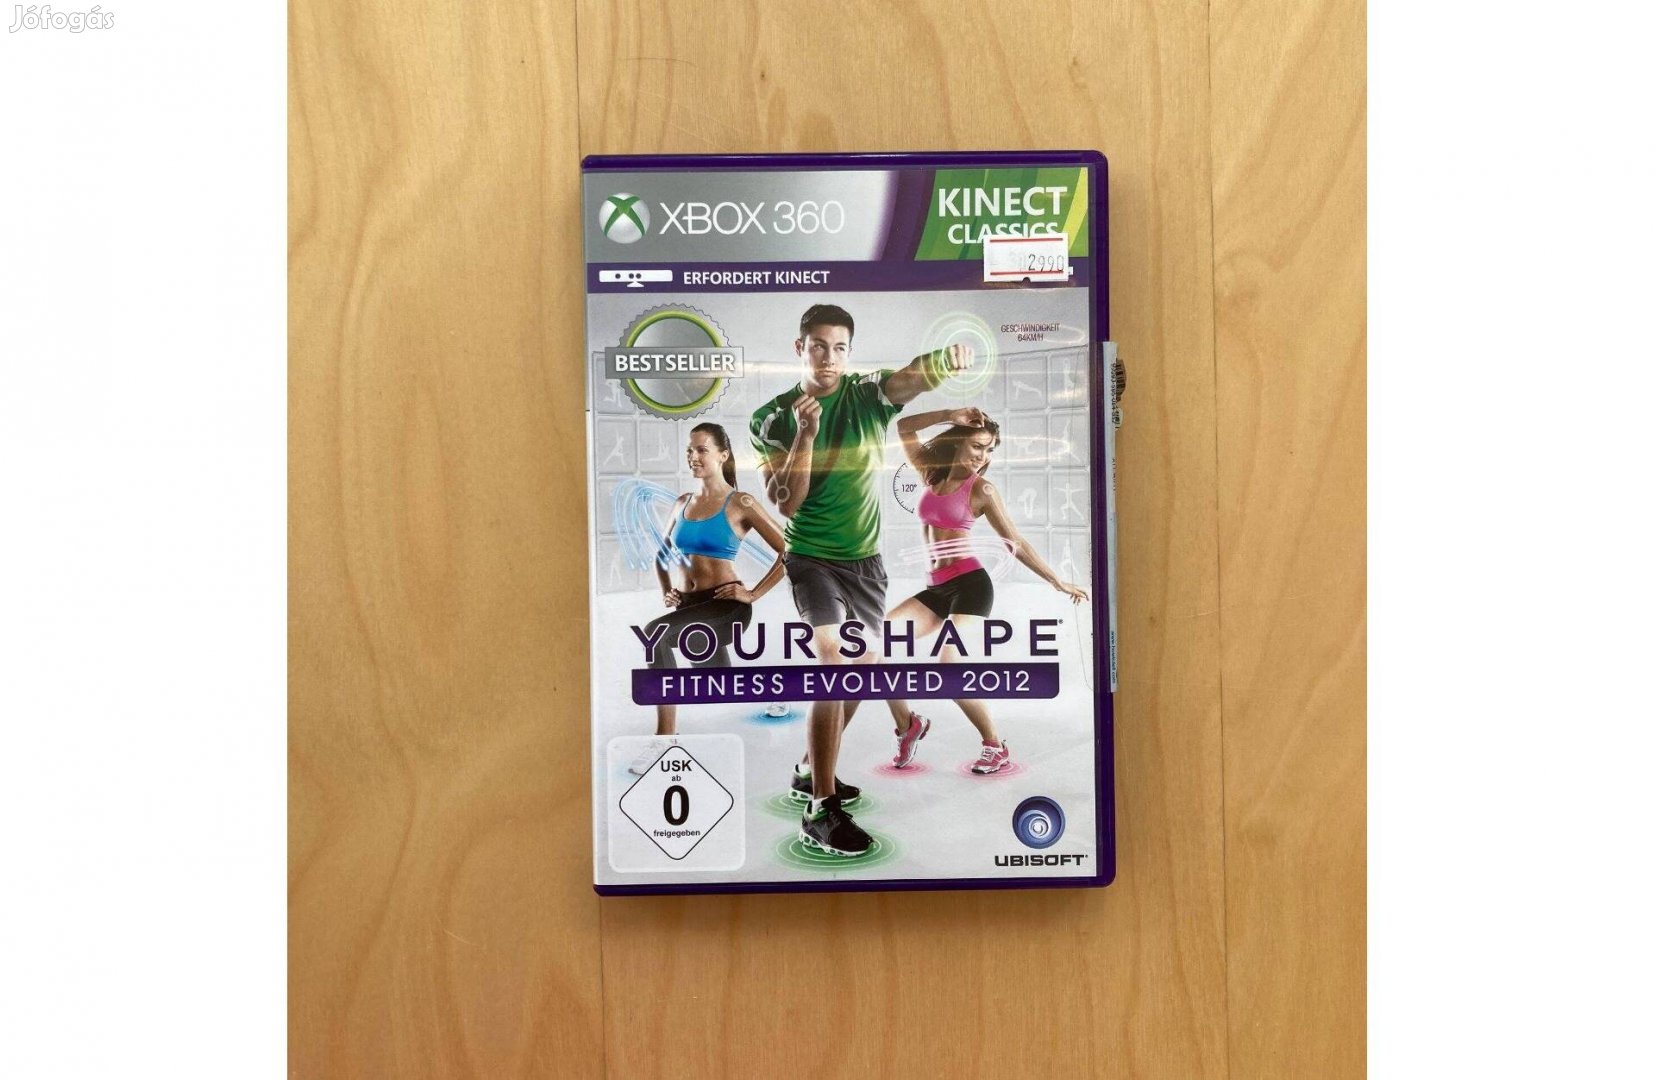 Xbox 360 Kinect Yourshape Fitness Evolved 2012 Használt